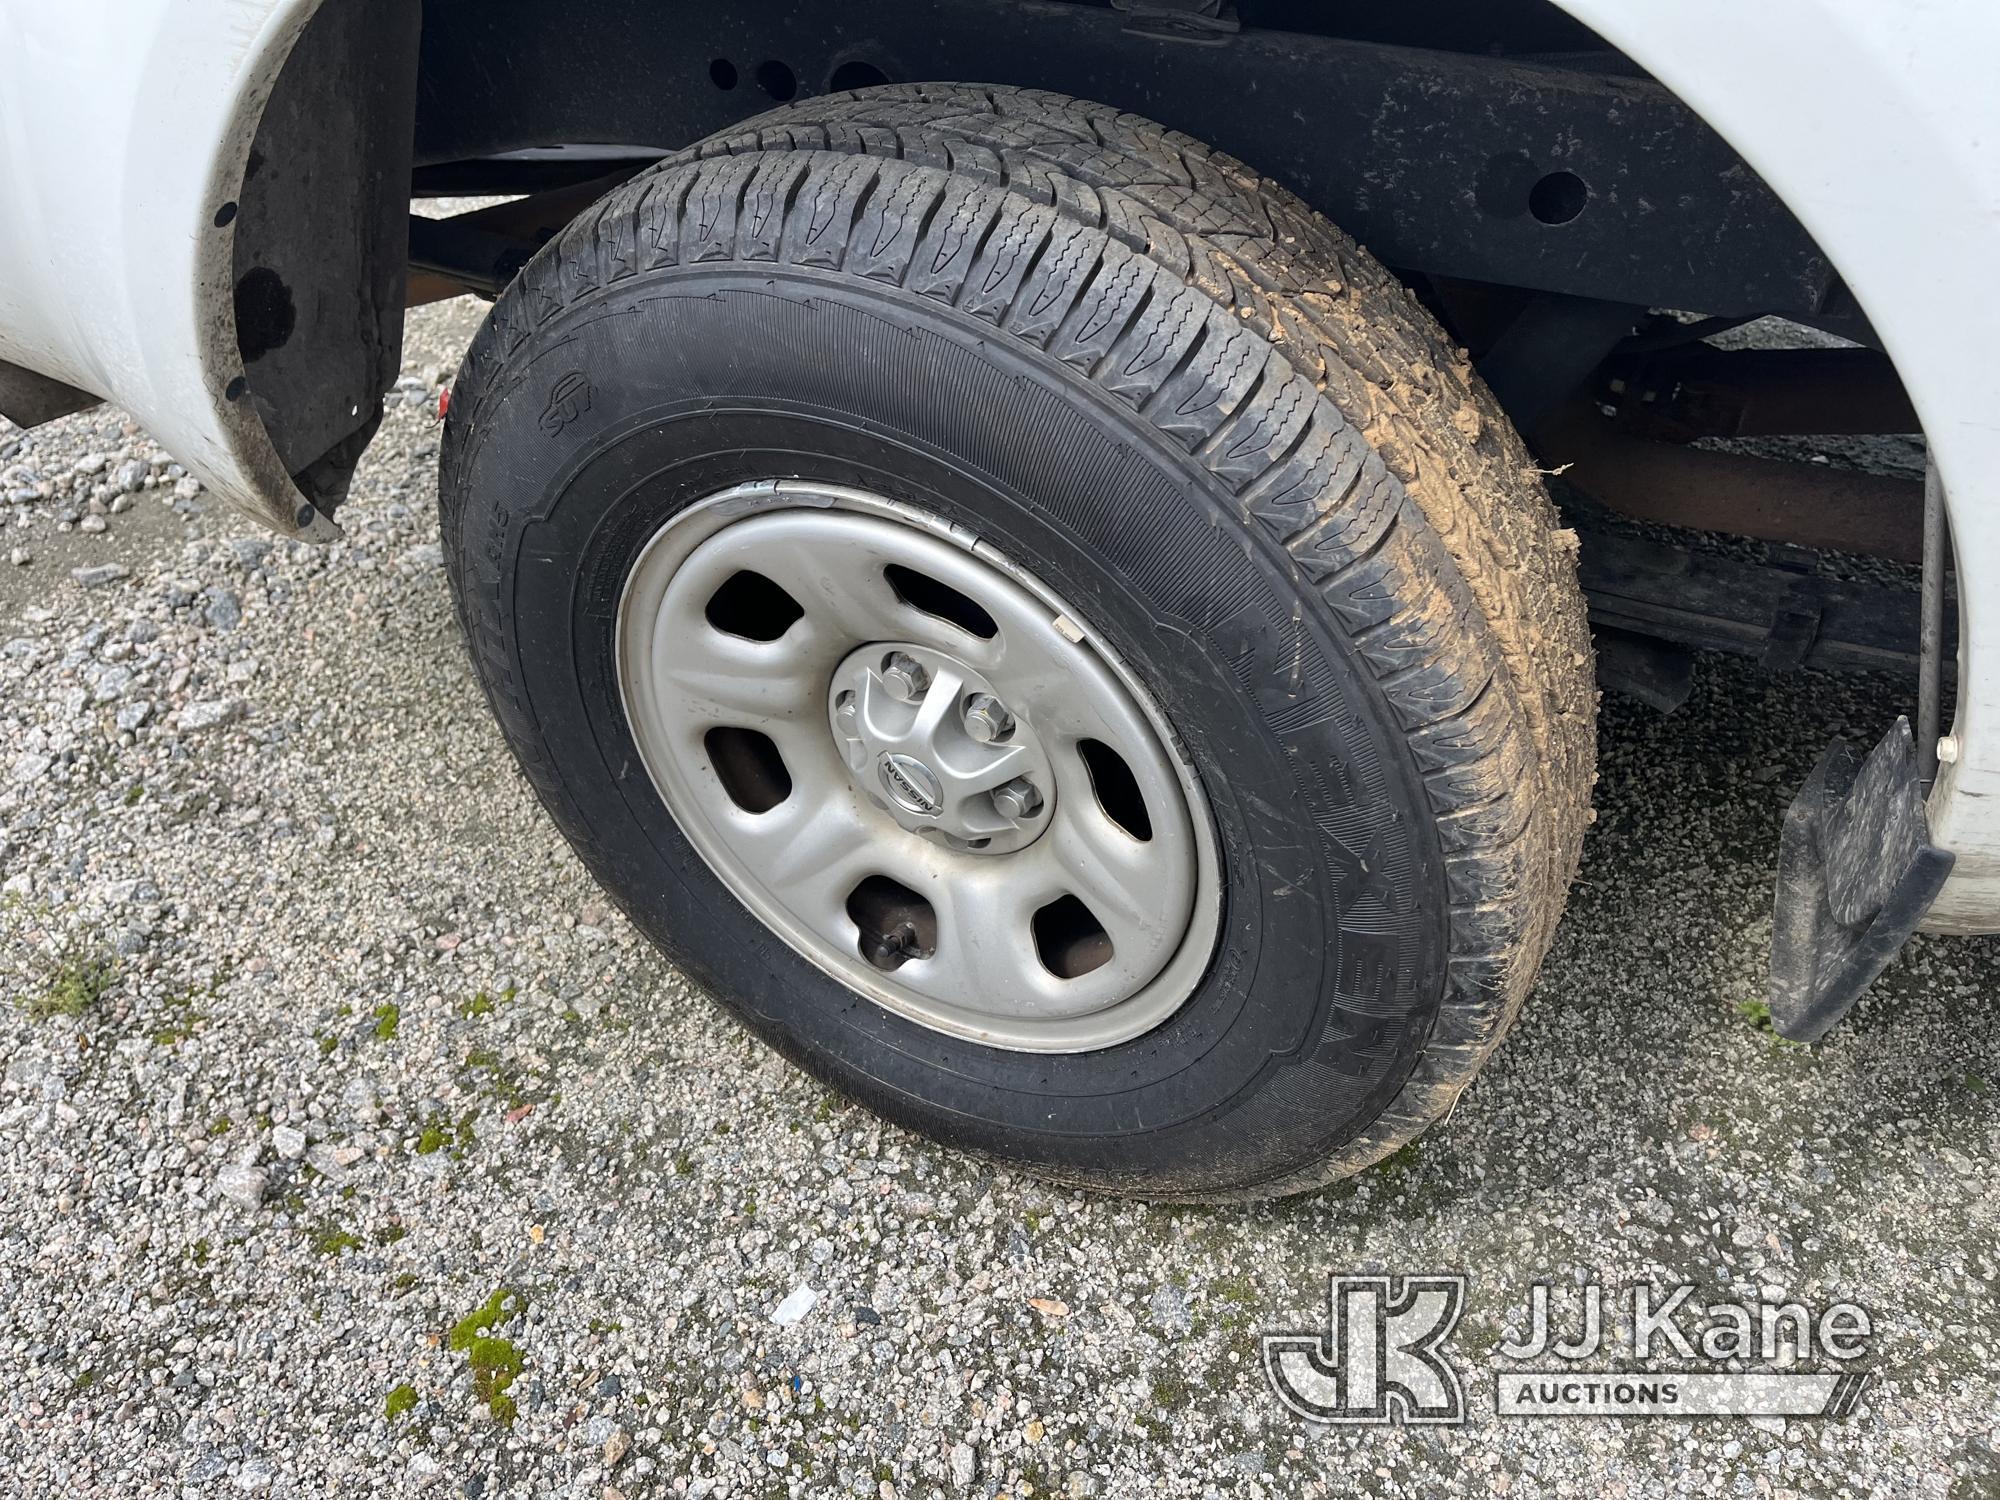 (Chester, VA) 2018 Nissan Frontier Extended-Cab Pickup Truck Runs & Moves) (Major Body Damage, Rear